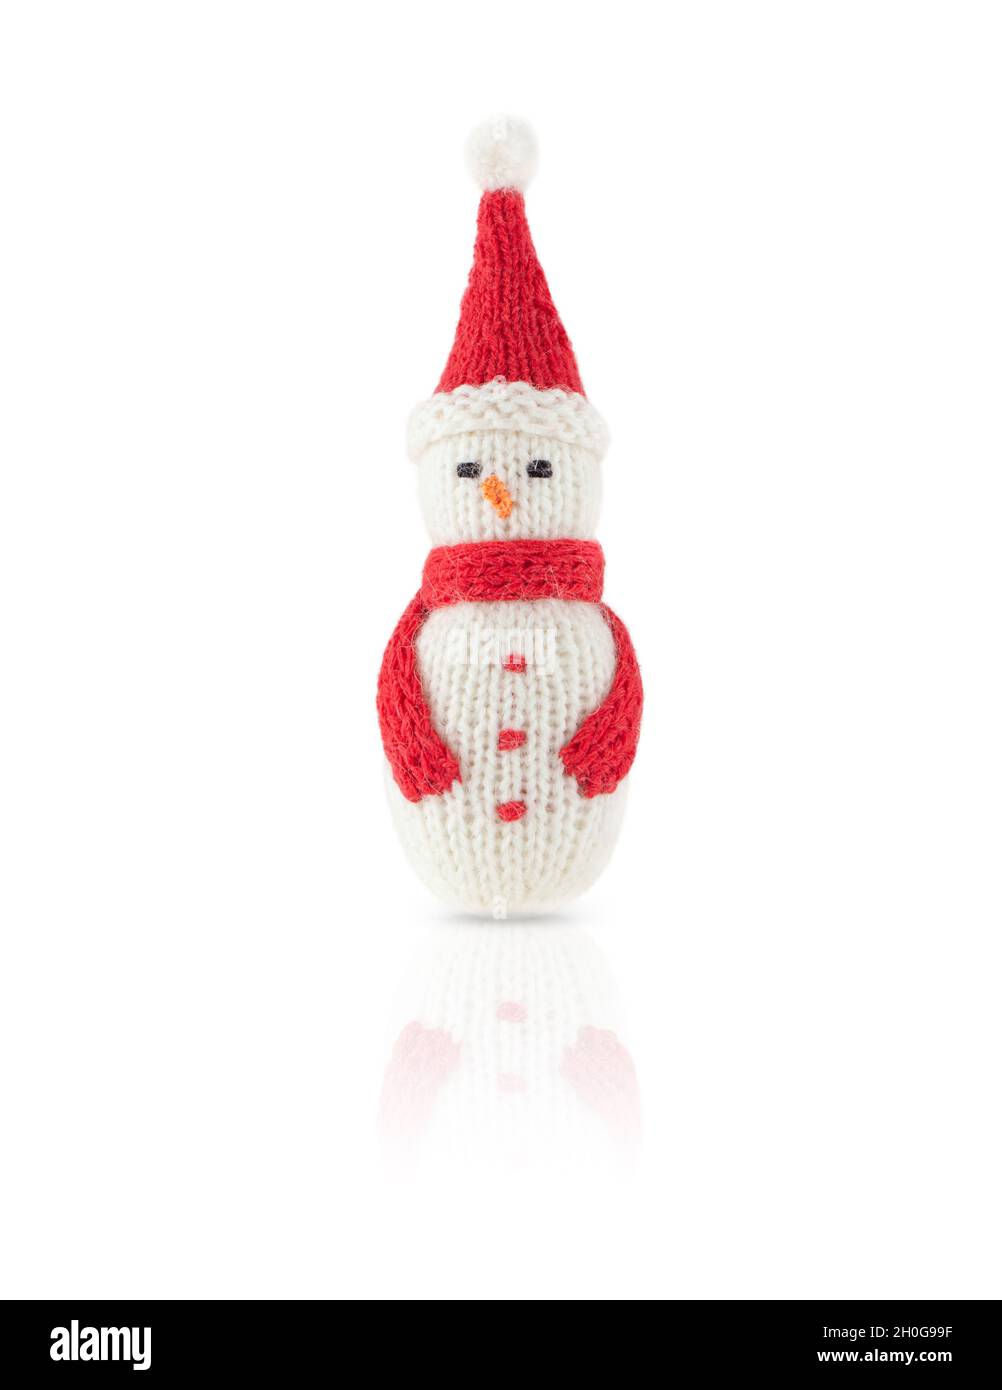 Bonhomme de neige de Noël tricoté en chapeau rouge et foulard isolé sur fond blanc, avec ombre et réflexion. Banque D'Images